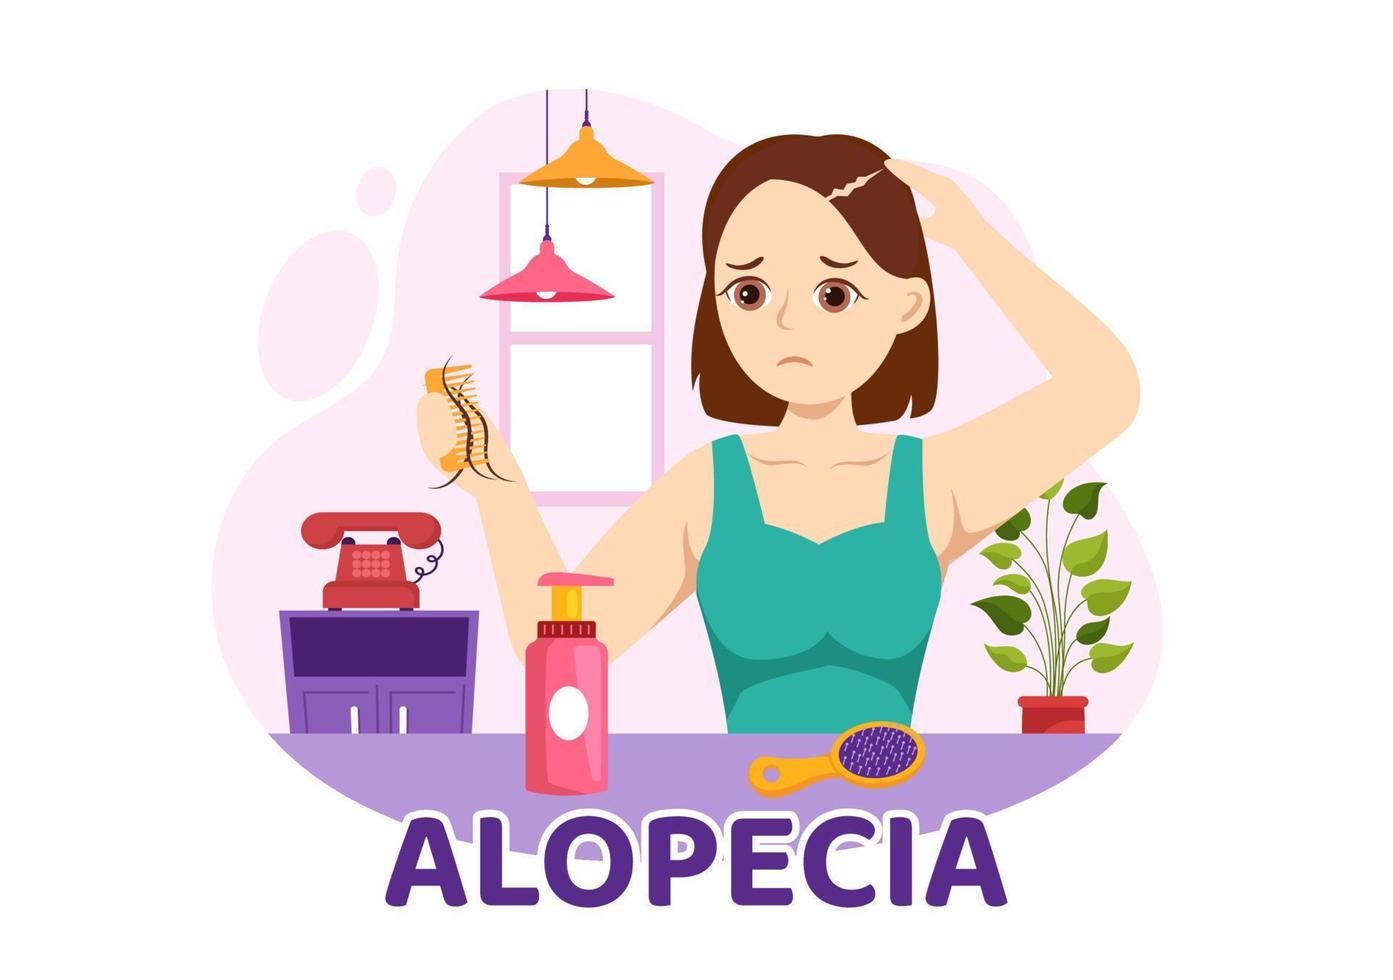 alopecia illustrazione con capelli perdita autoimmune medico malattia e calvizie nel assistenza sanitaria piatto cartone animato mano disegnato bandiera o atterraggio pagina modelli vettore